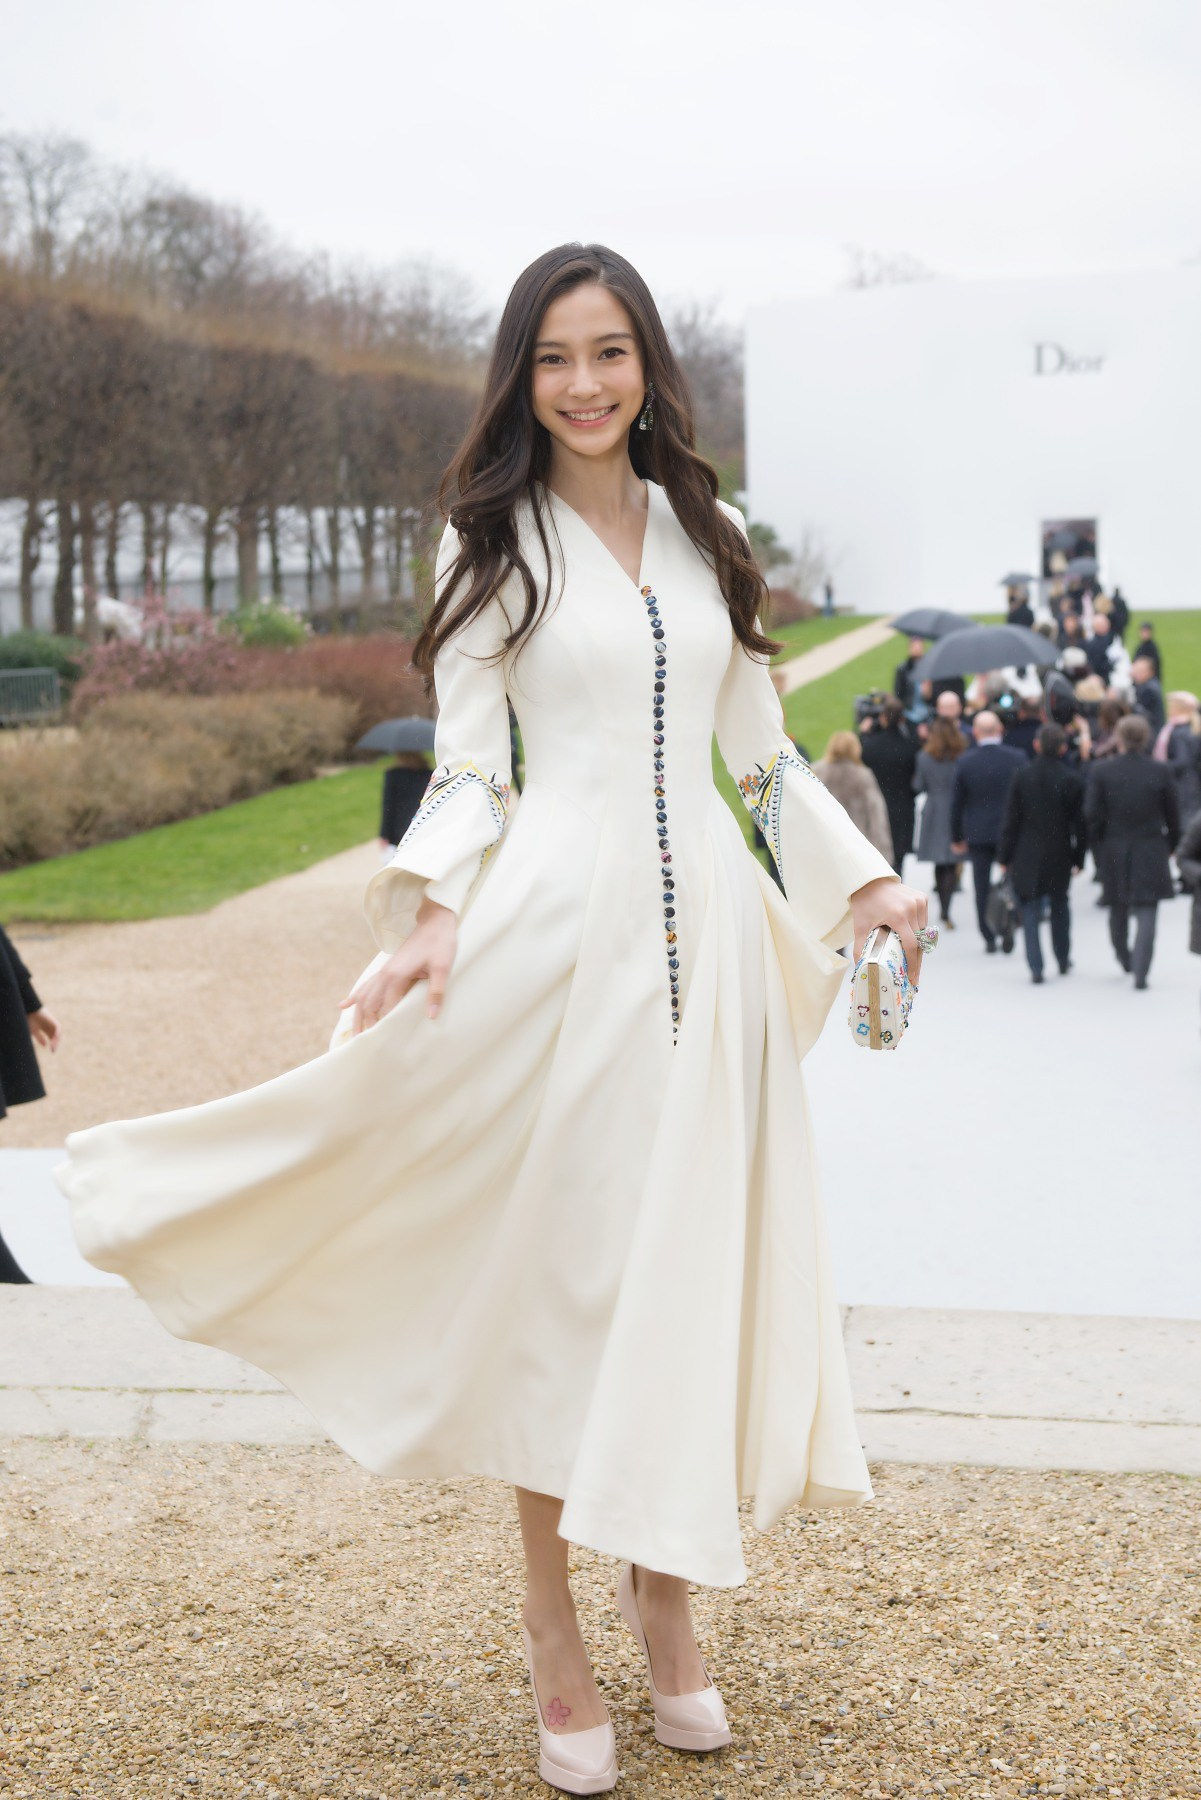   Bộ váy trắng cổ V với hàng cút màu sắc làm điểm nhấn là lựa chọn của Angelababy khi tham dự buổi trình diễn Dior Thu – Đông 2015. (Ảnh: Sina)   